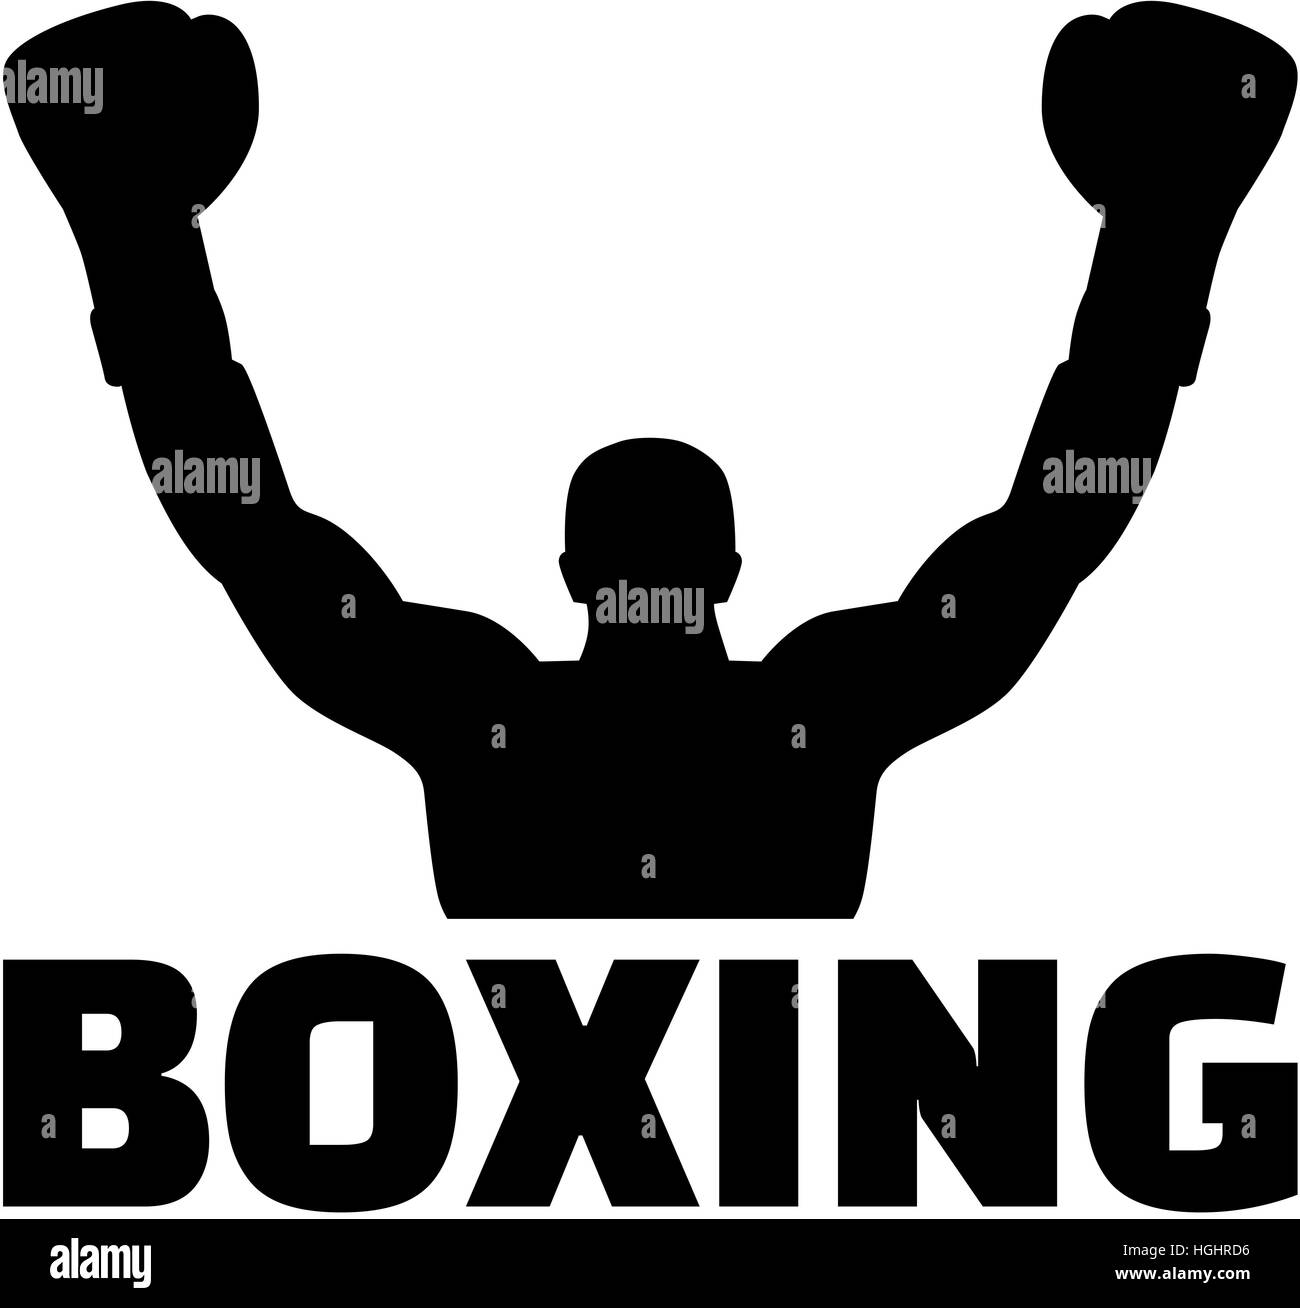 Boxer silueta ganadora con Word Fotografía de stock - Alamy